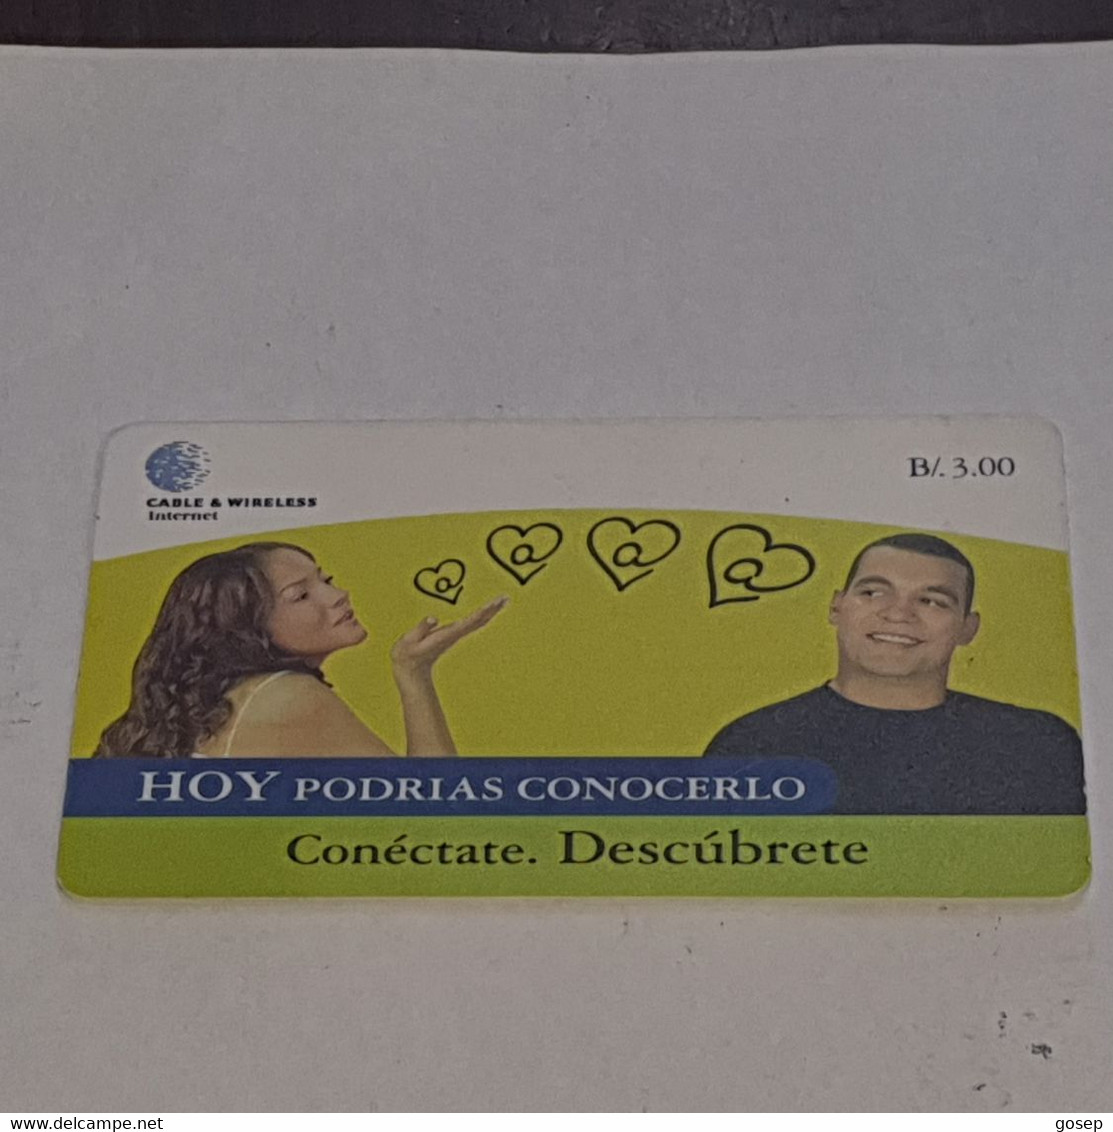 PANAMA-(PAN-C&W-061A)-conectate Descubrete-(9)-(b/.3.00)-(0000006783412)-used Card+1card Prepiad Free - Panama